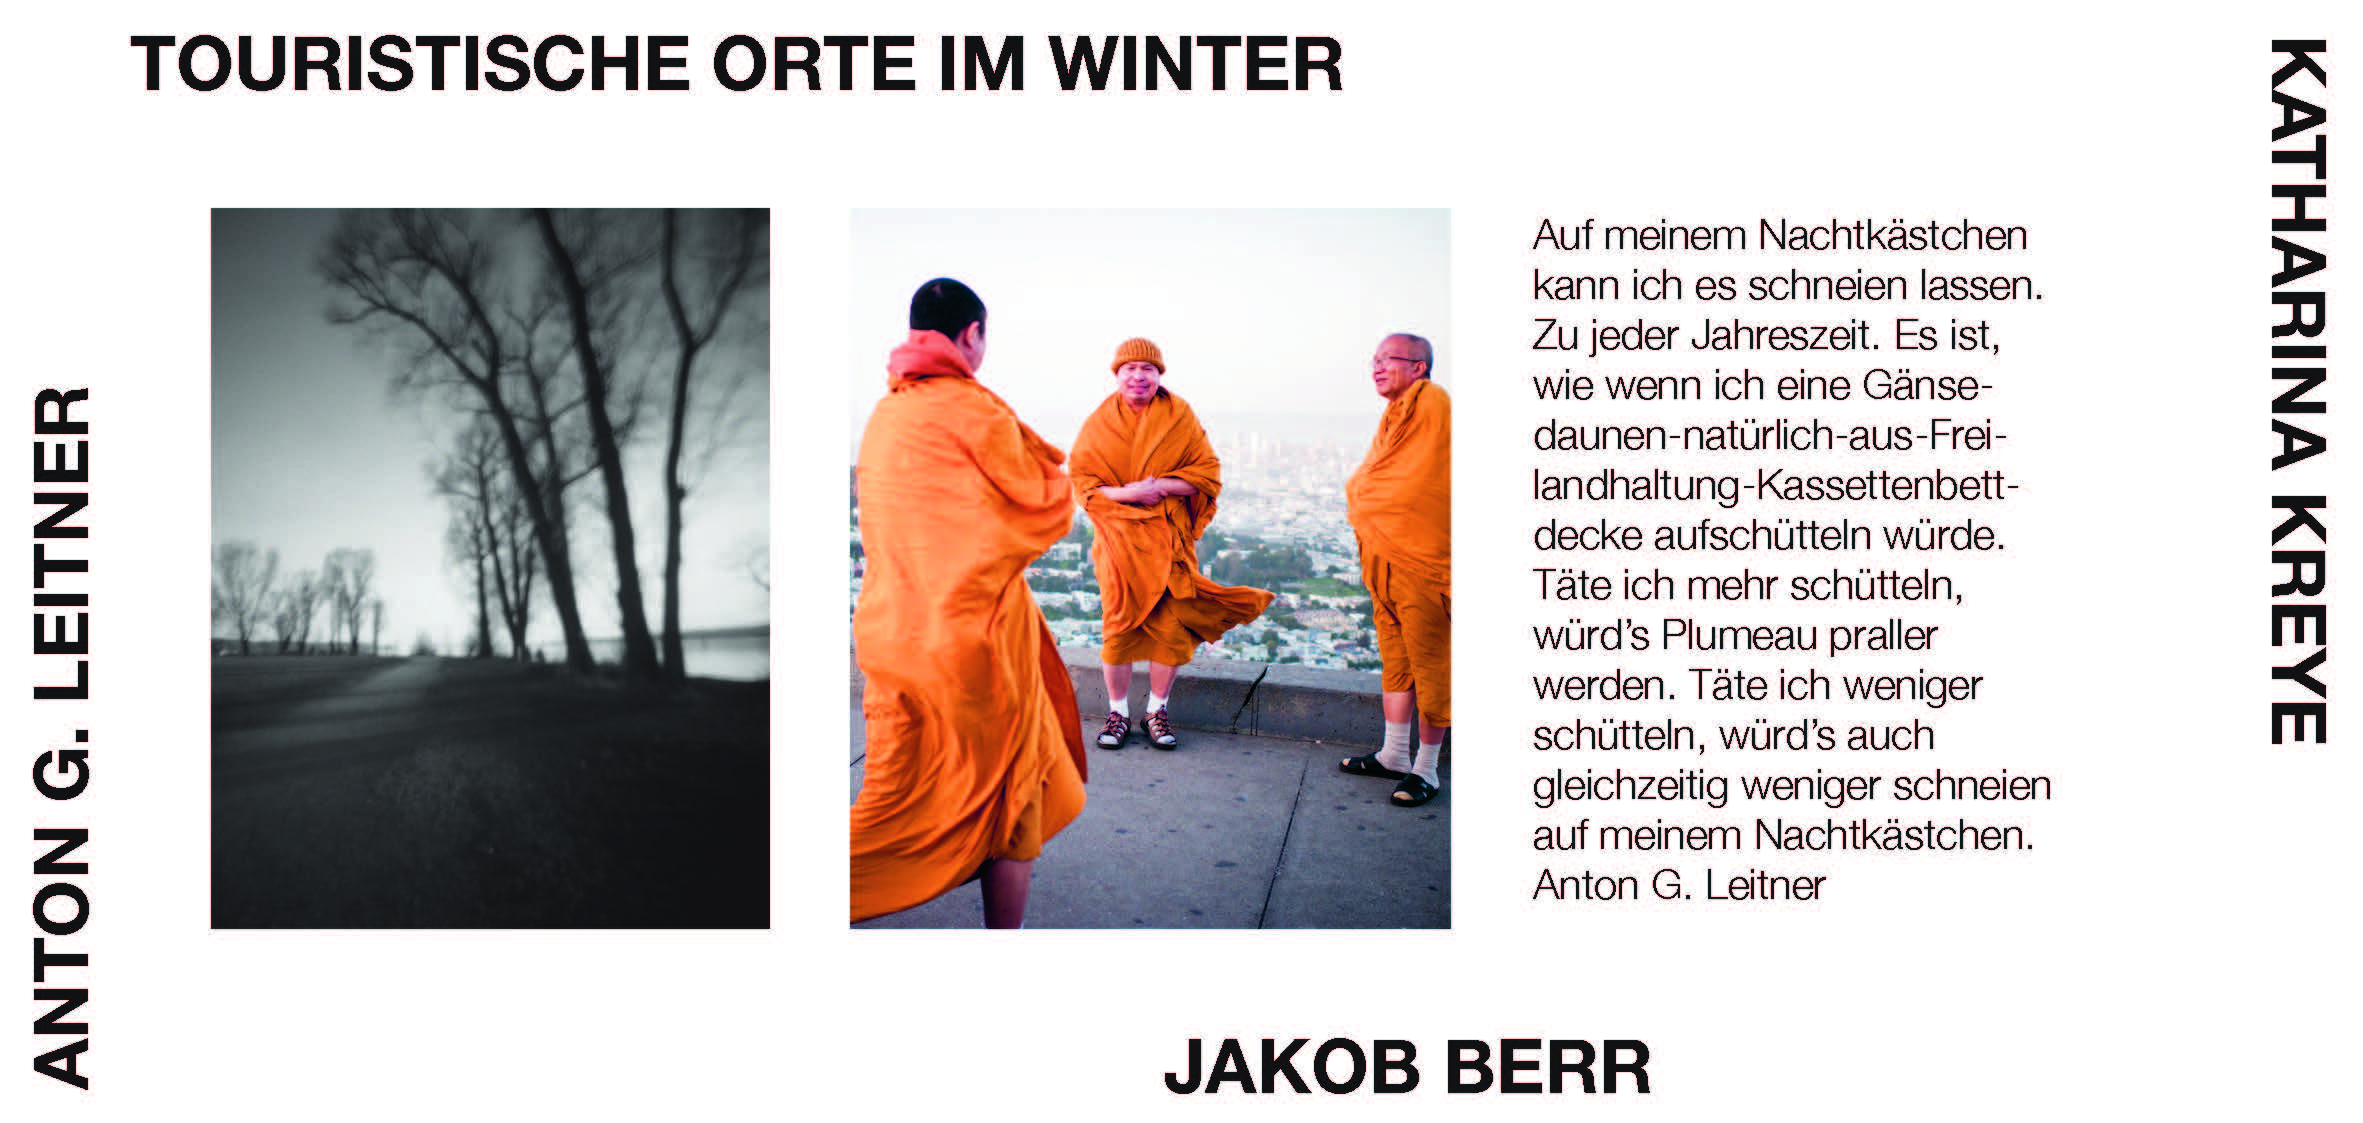 Jakob Berr / Katharina Kreye / Anton G. Leitner: Touristische Orte im Winter